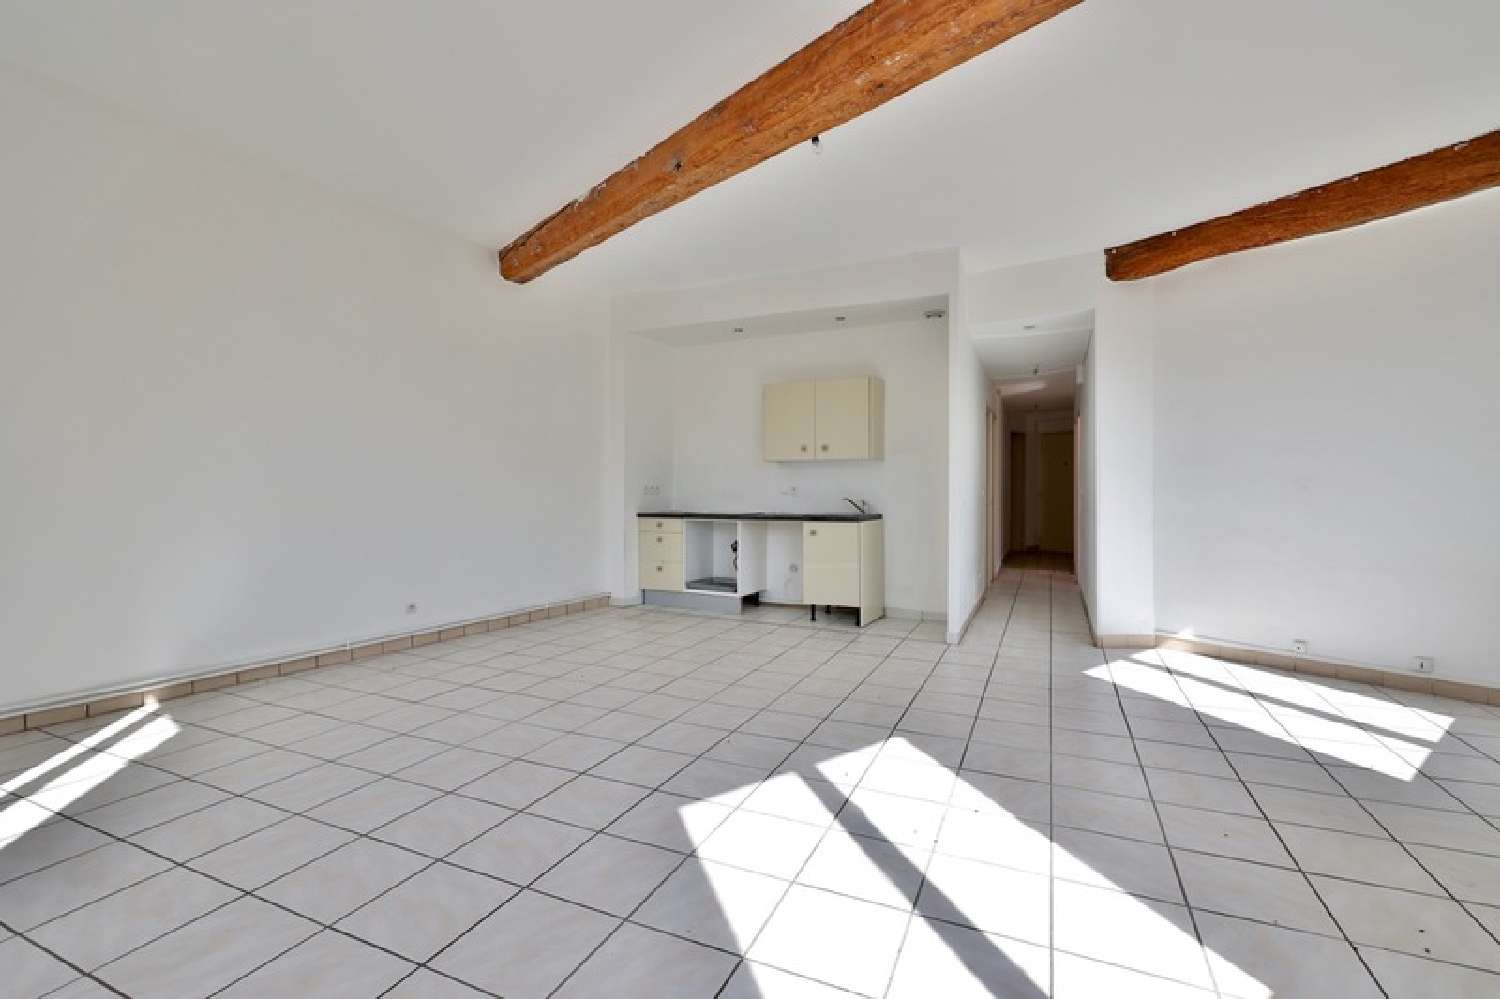  à vendre appartement Pontcharra-sur-Turdine Rhône 2